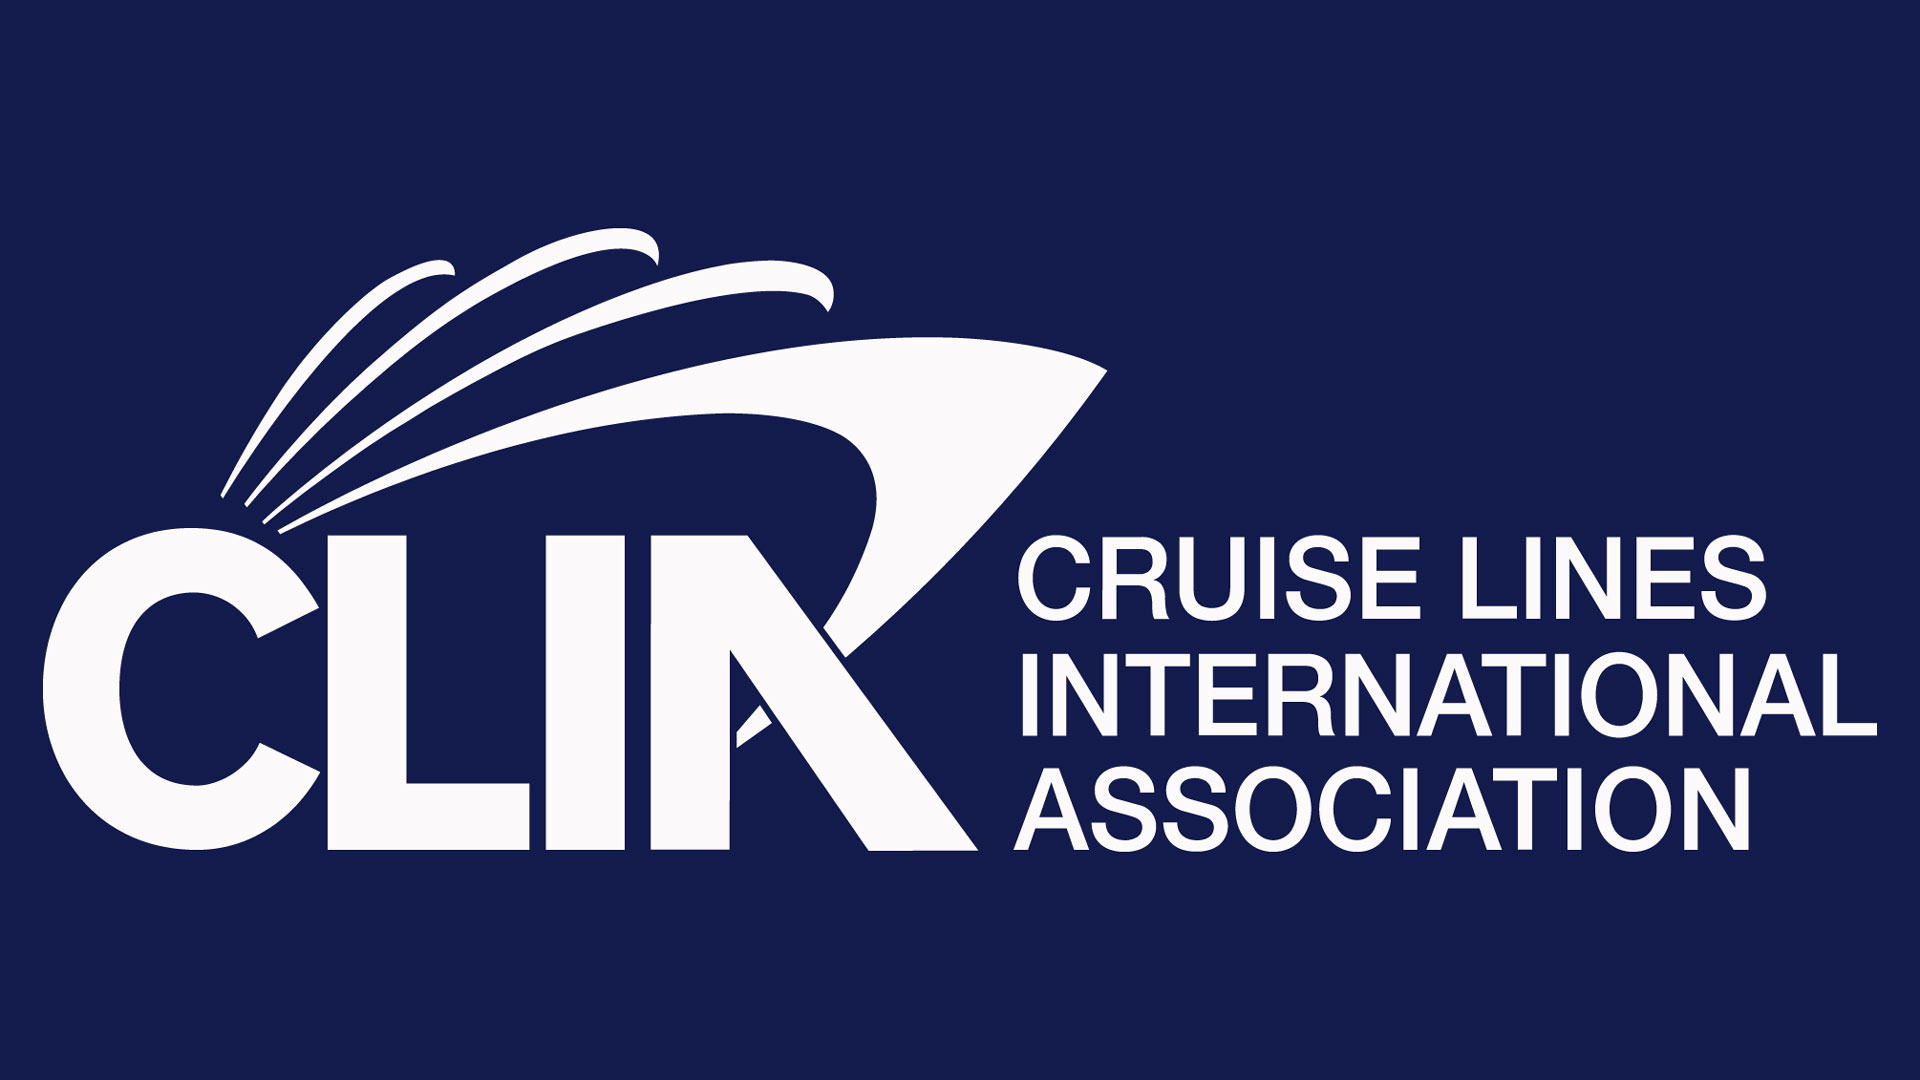 CLIA Cruise Lines International Association Logo